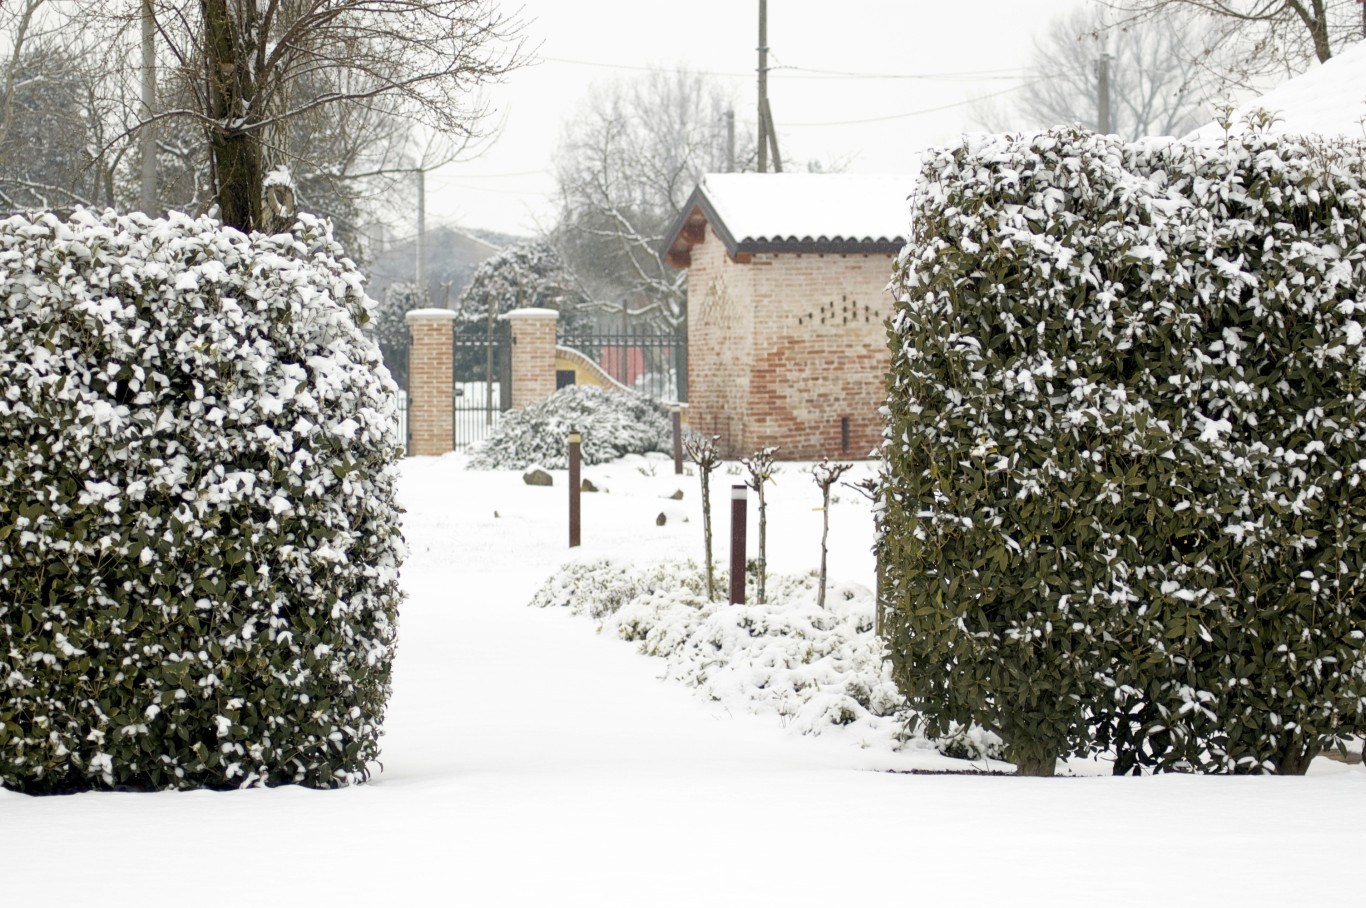 Location Eventi Invernali Veneto2